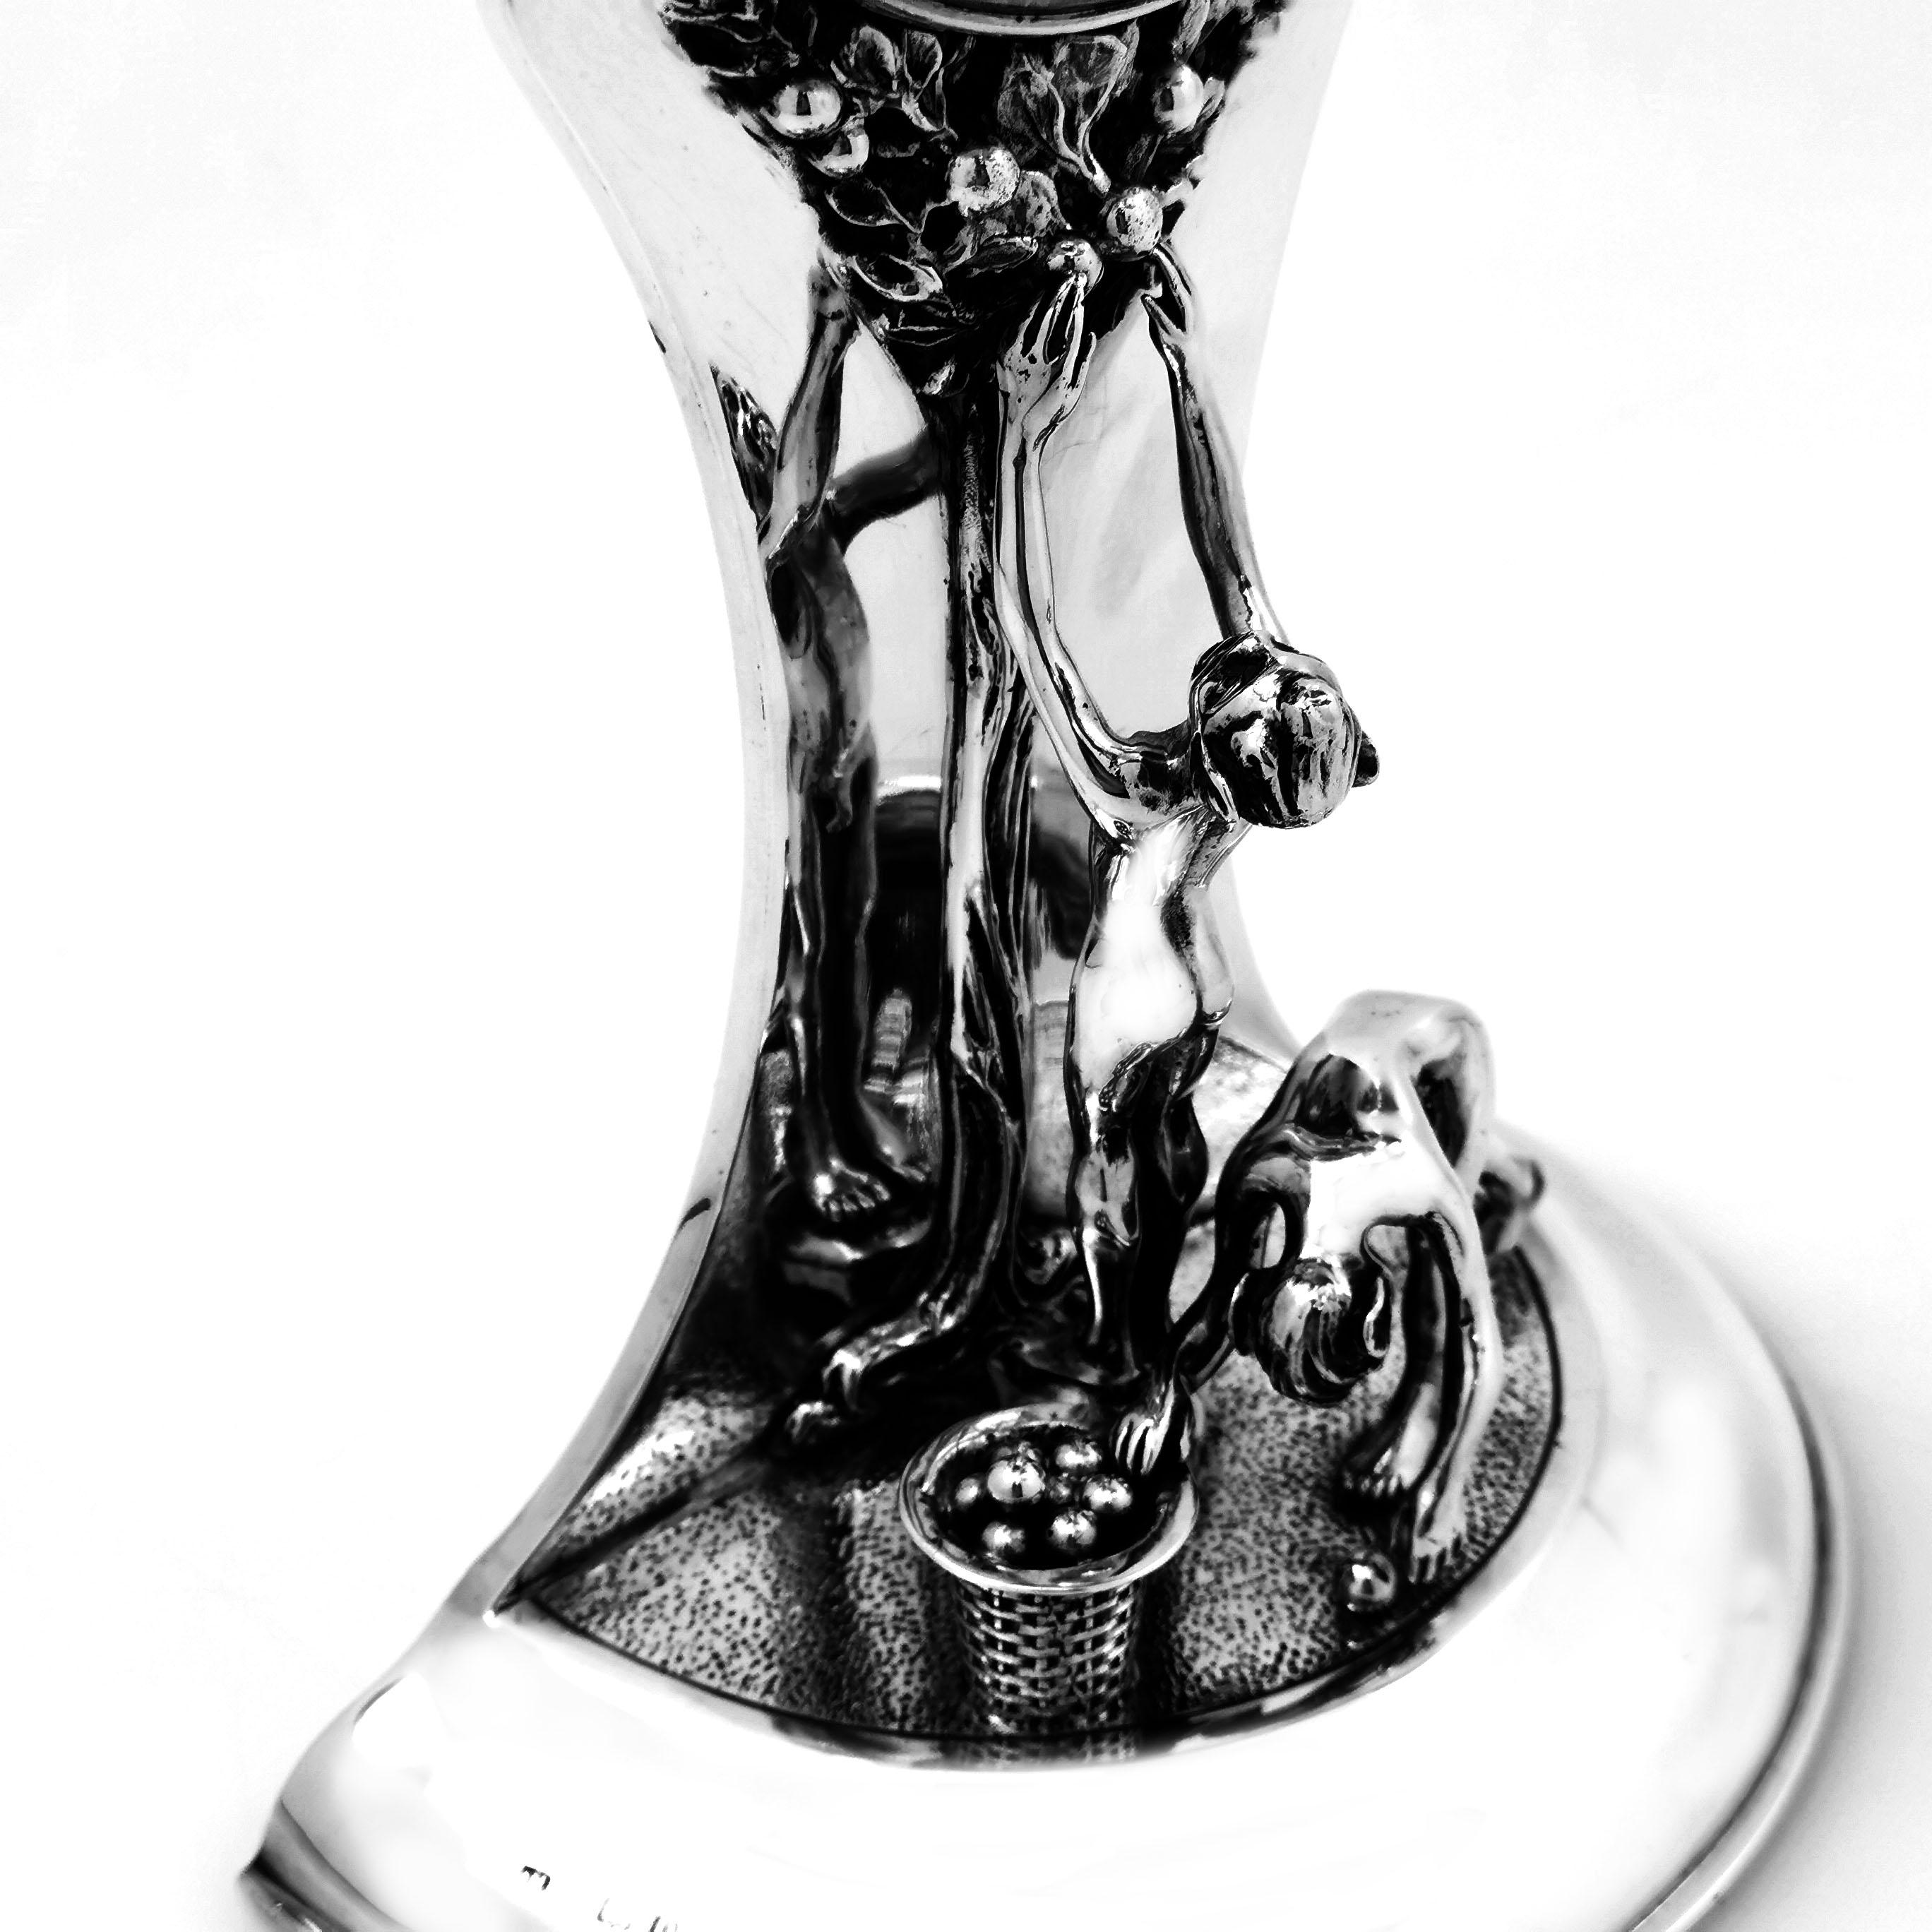 Antique Silver Art Nouveau Table Clock Mantle 1913 Tree of Life Design For Sale 1